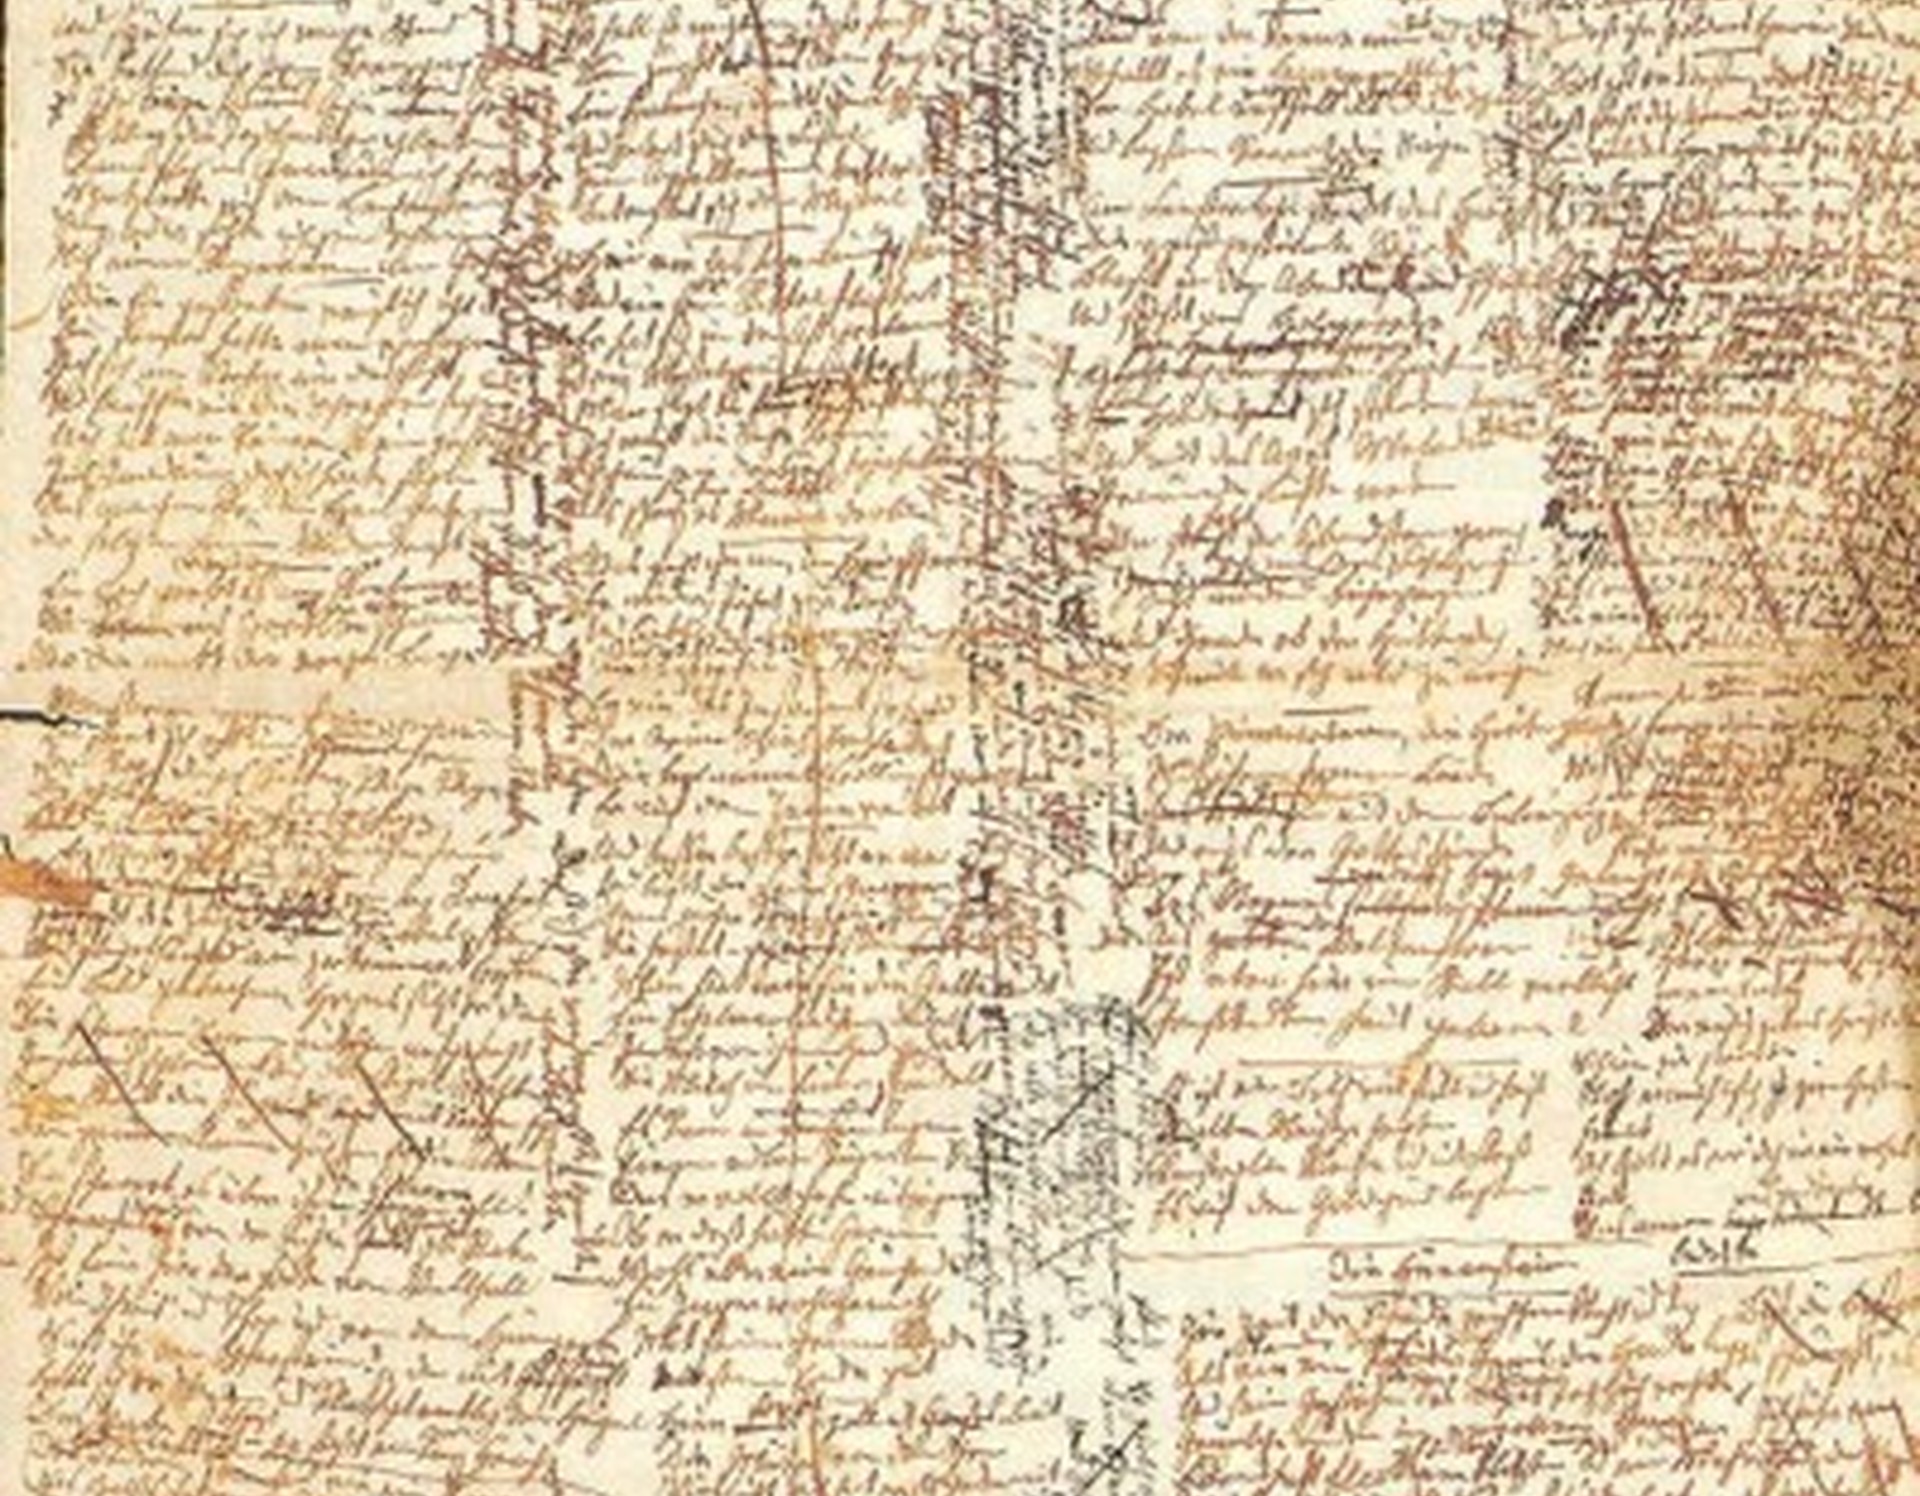 Handschrift von Annette von Droste-Hülshoff